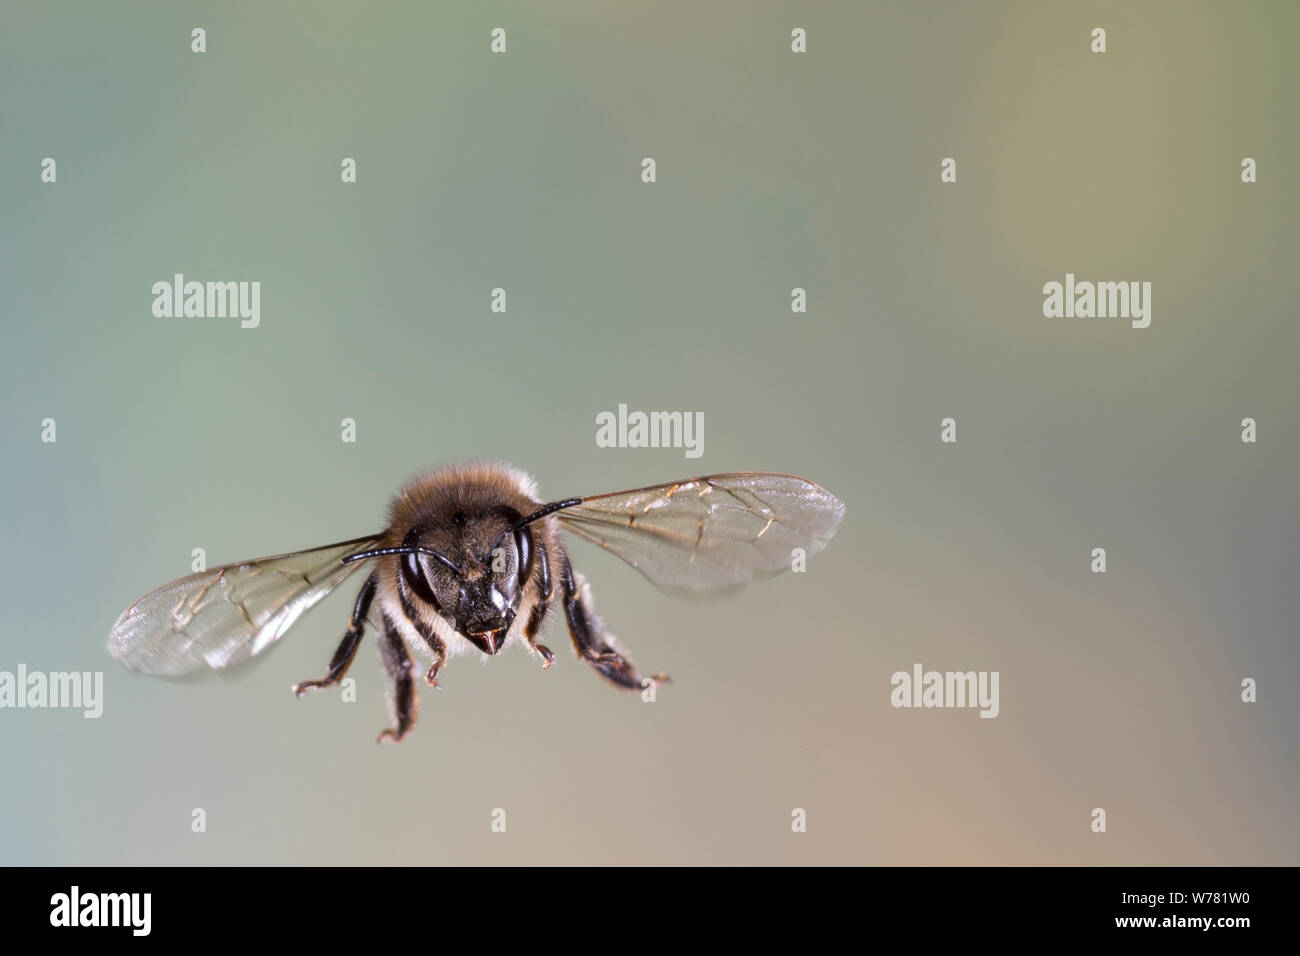 Honigbiene, Honig-Biene, Europäische Honigbiene, Braunschweiger Honigbiene, Flug, fliegend, Biene, Bienen, Apis mellifera, Apis mellifica, abeille, ruche Banque D'Images